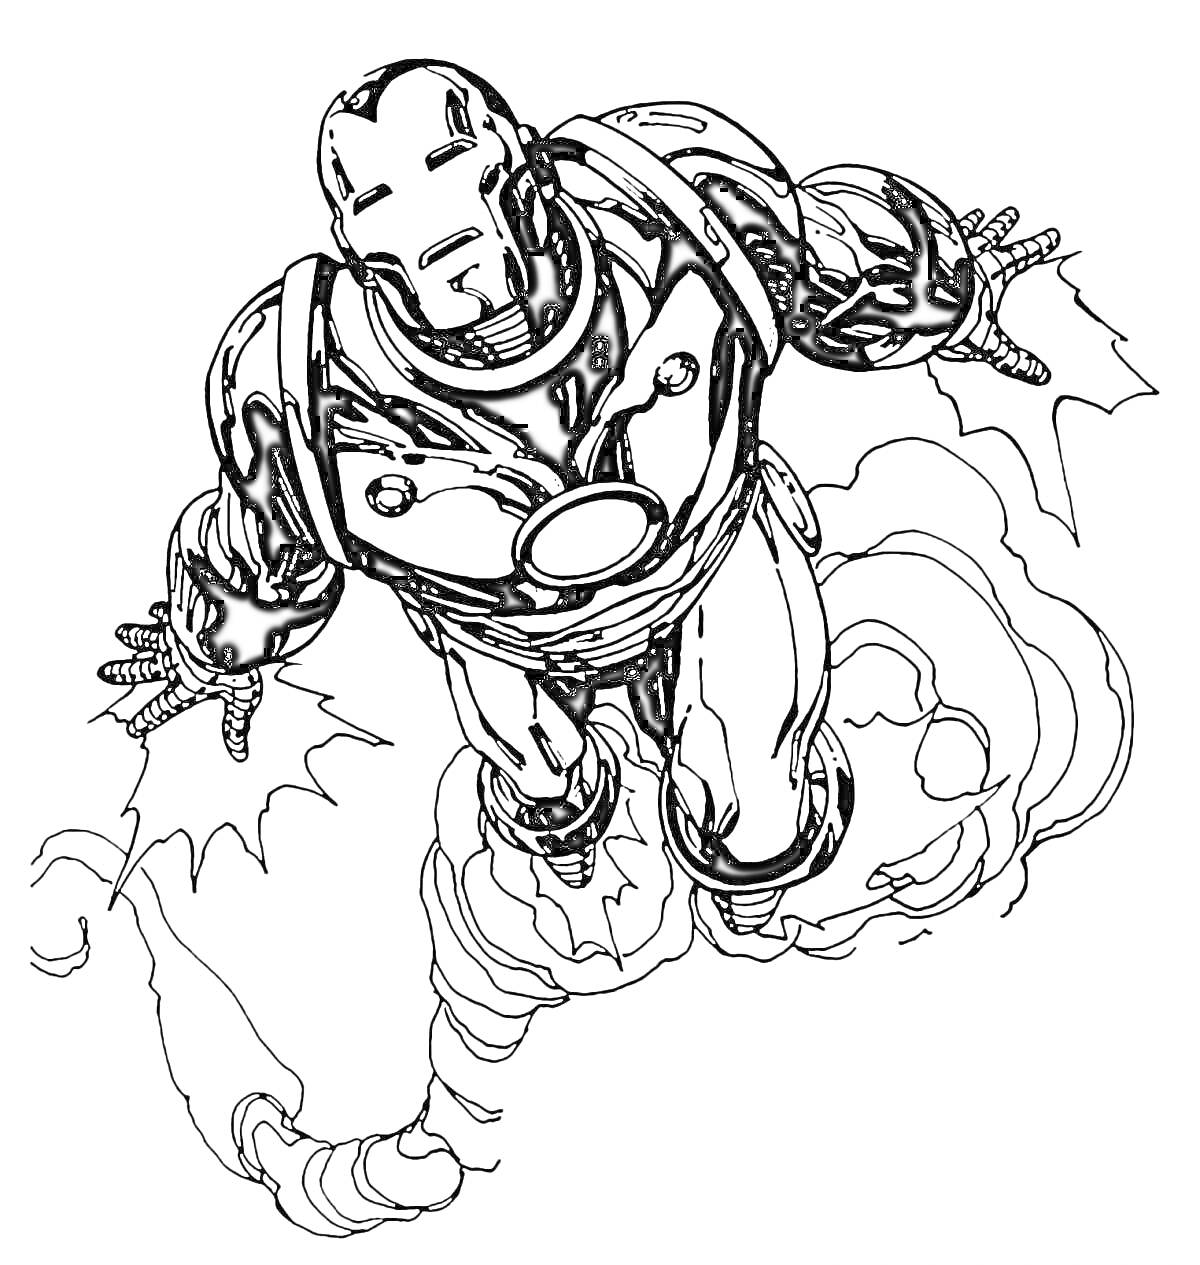 Раскраска Железный человек, летящий с помощью реактивных двигателей, стреляющий энергетическими лучами из рук